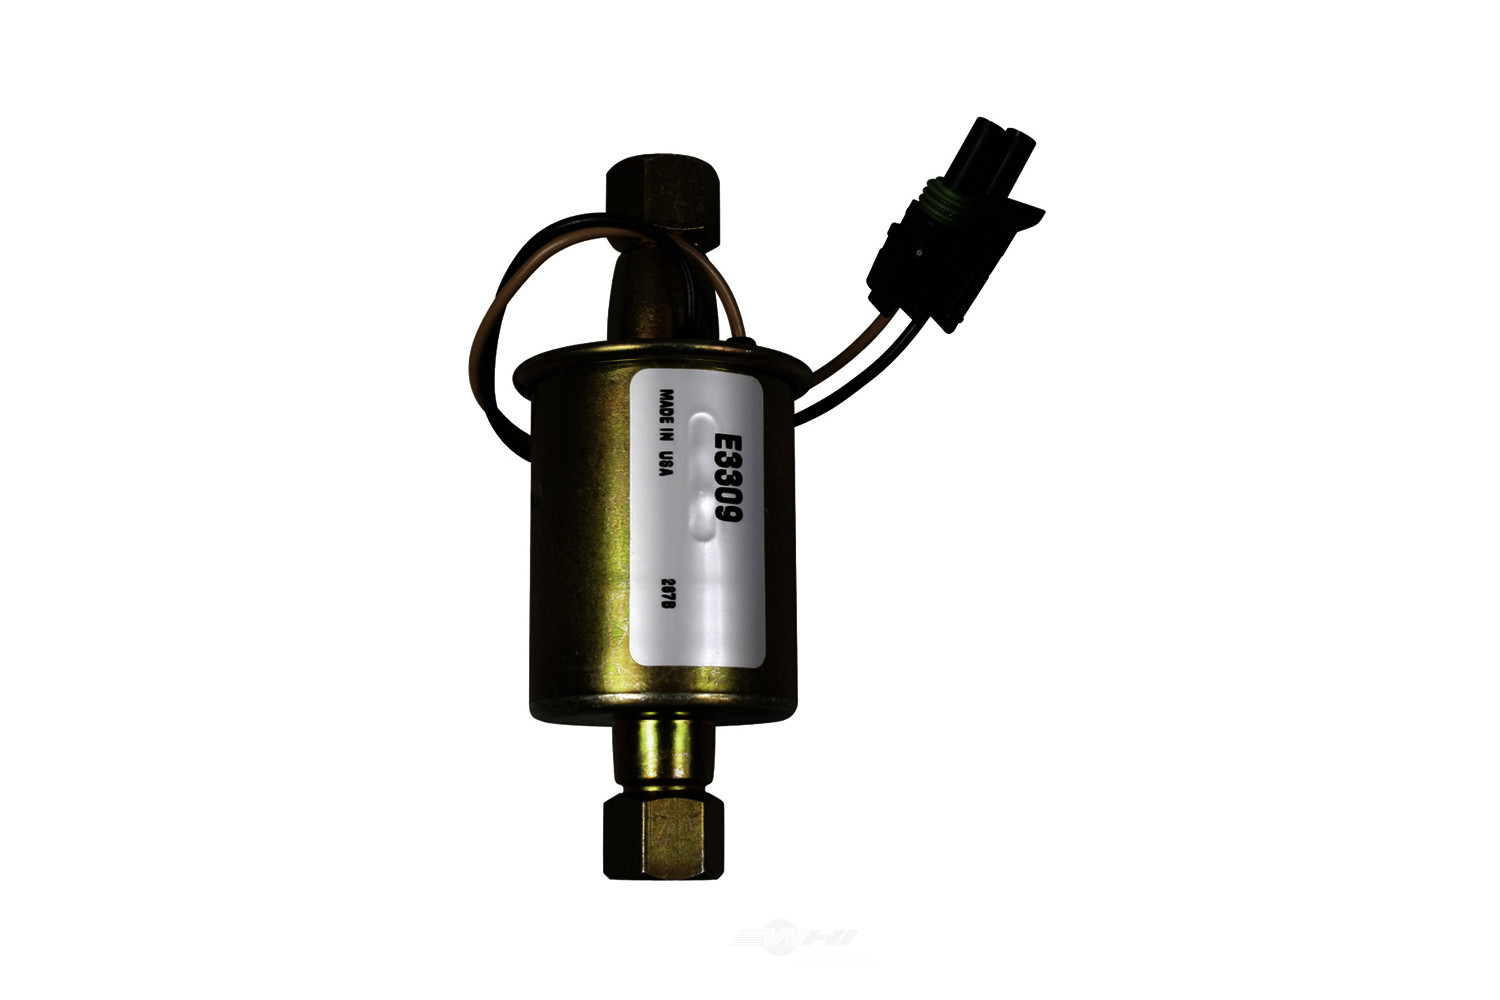 ACDELCO GM ORIGINAL EQUIPMENT - Electric Fuel Pump - DCB EP309